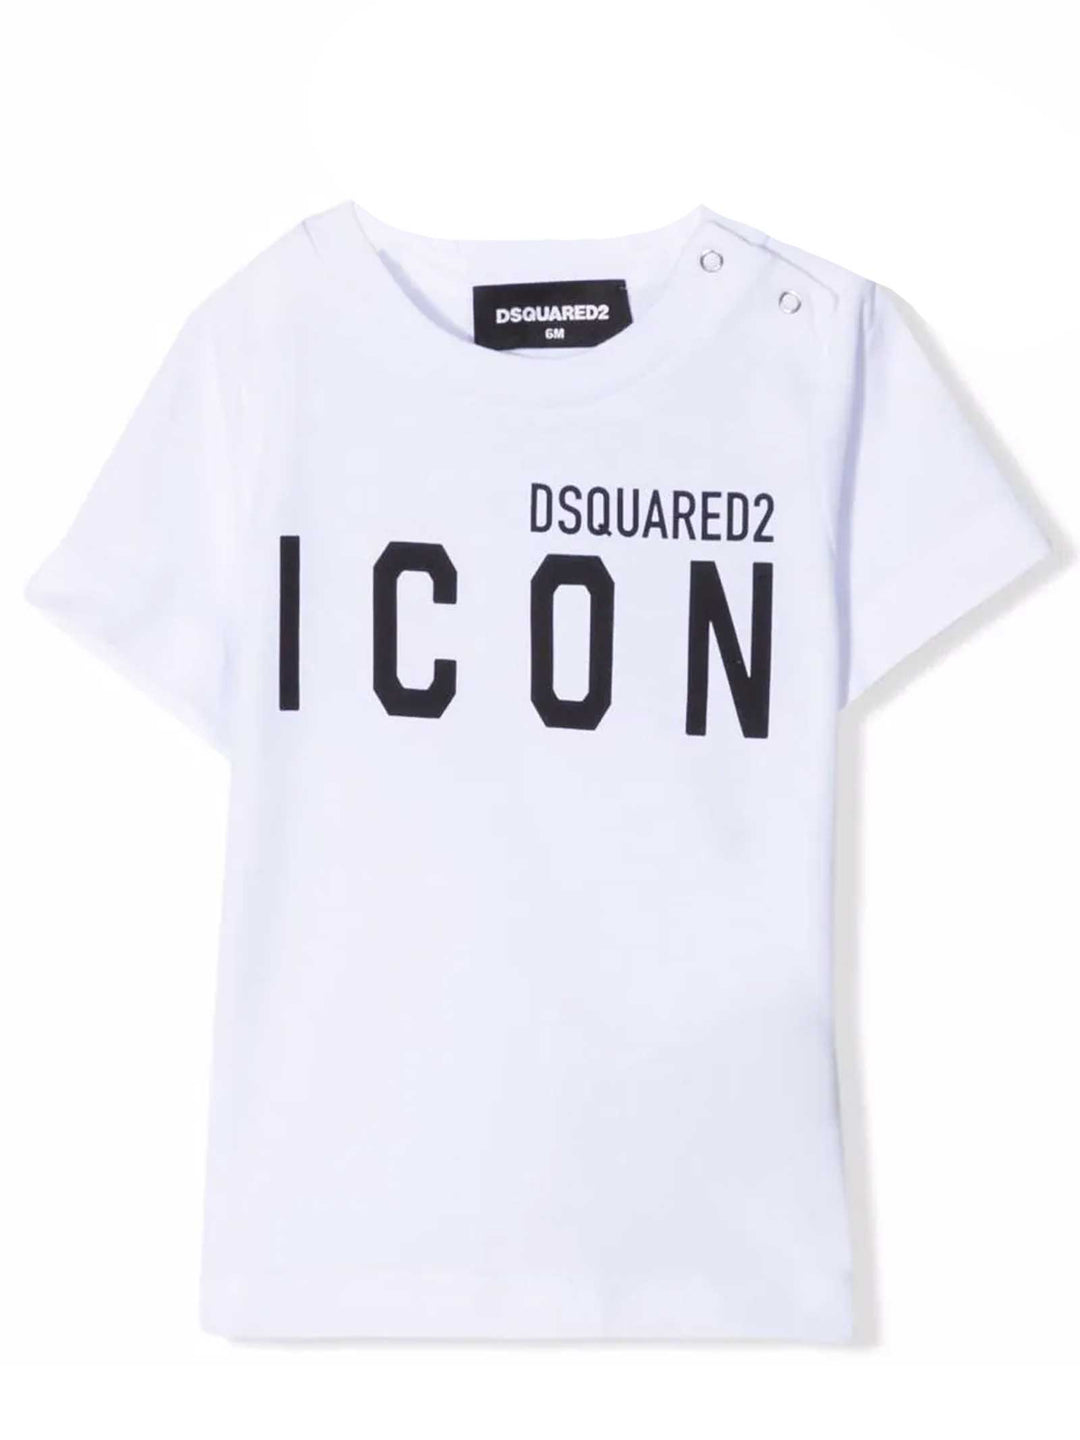 T-shirt bianca neonato unisex